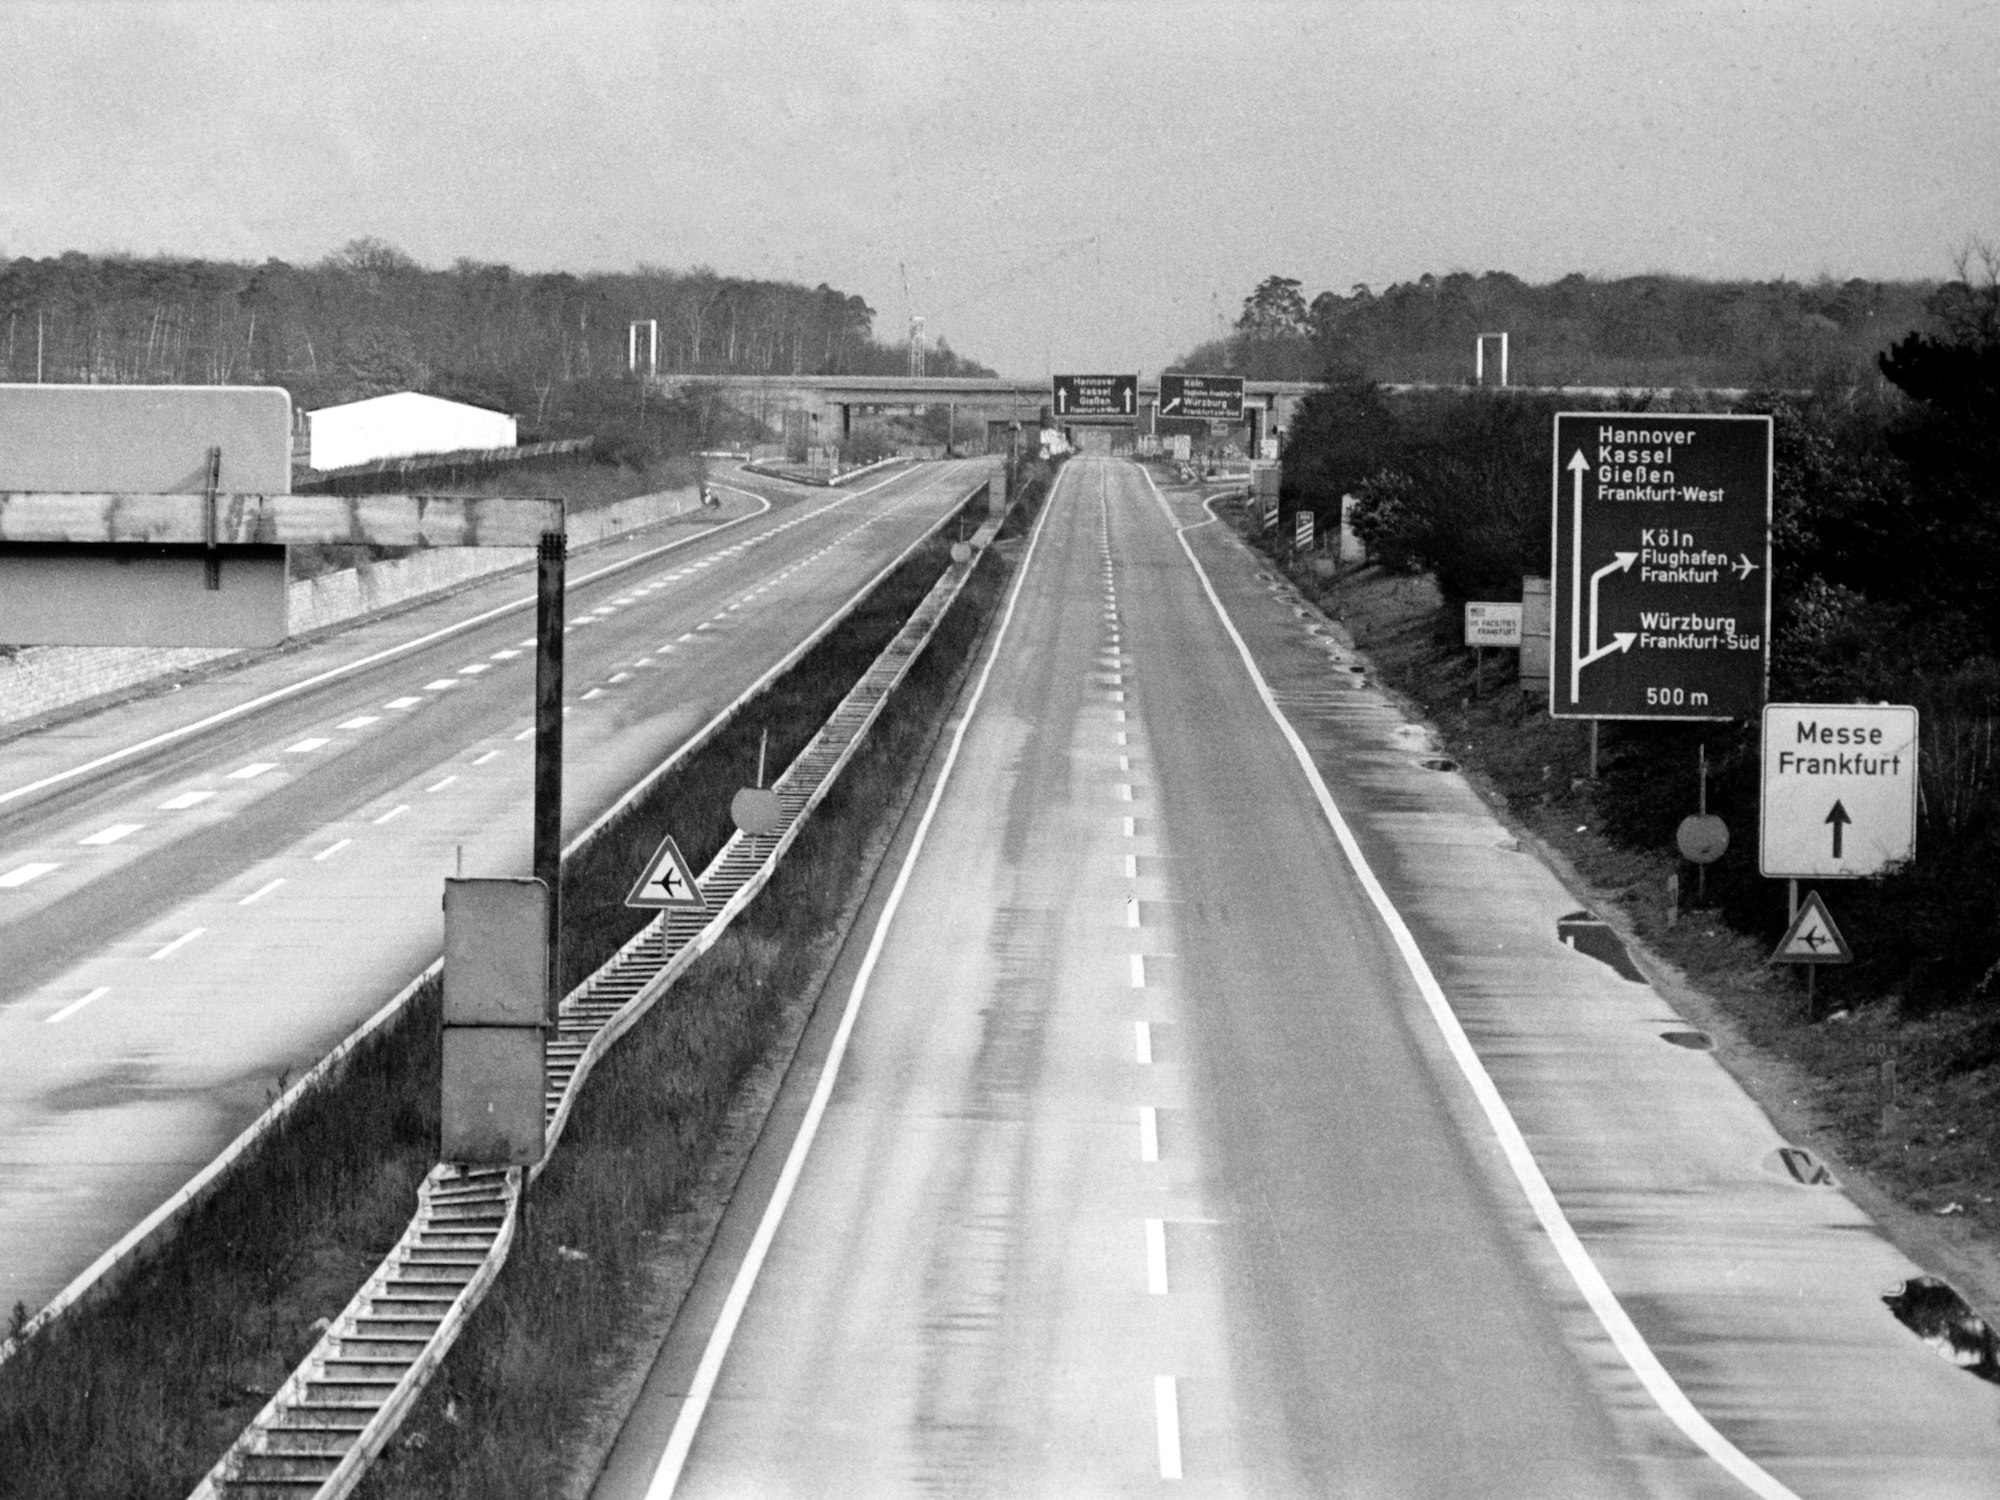 Blick auf eine leere Autobahn bei Frankfurt/Main. Wegen der Ölkrise wurde am 25. November 1973 zum ersten Mal ein sonntägliches Fahrverbot verhängt.